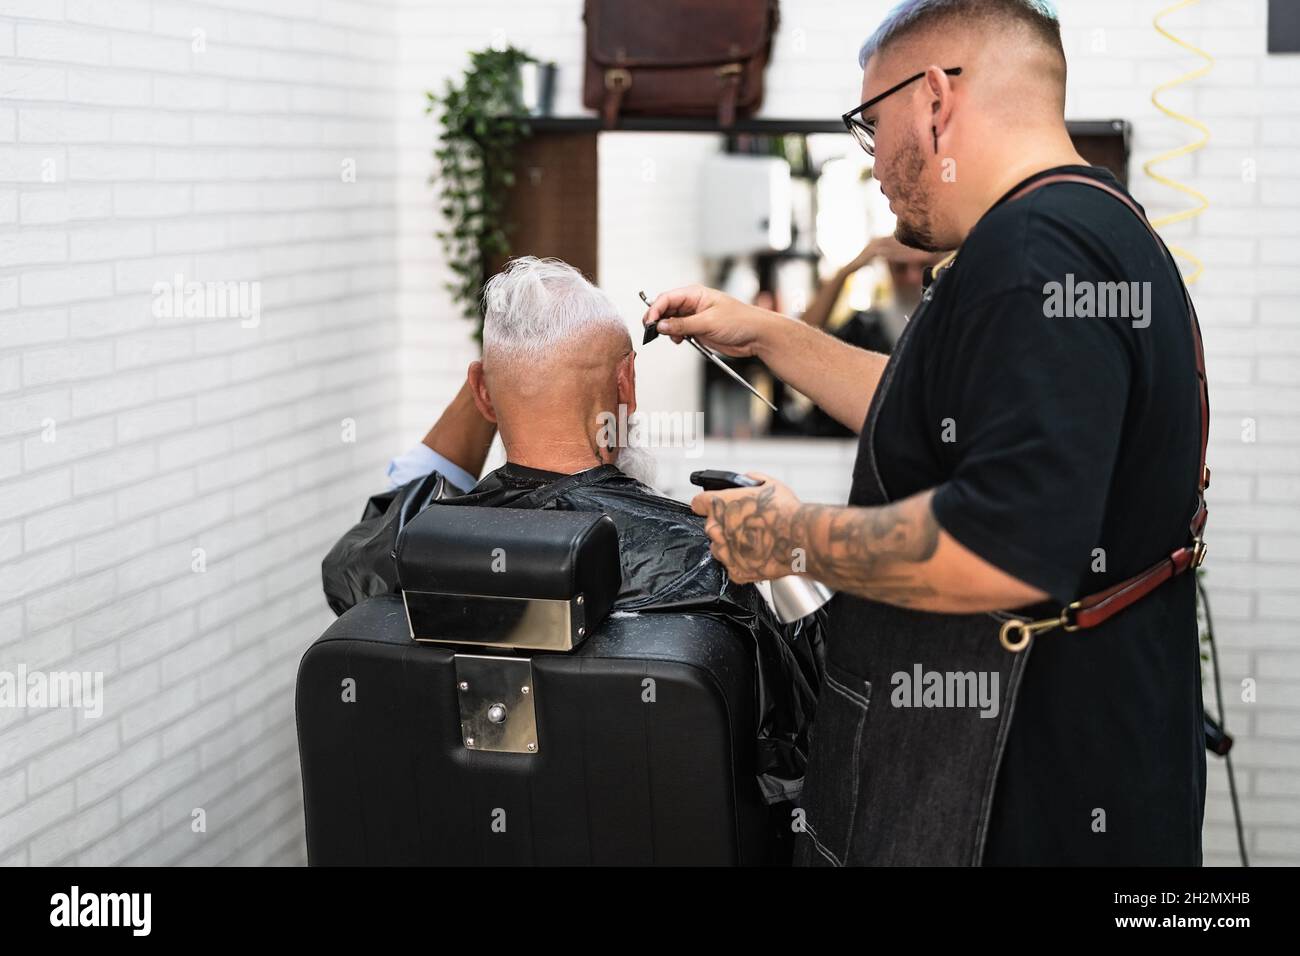 Männlicher Friseur Haare schneiden, um den Bart Senior Client - Junge Friseur arbeitet in Friseursalon - Gesundheitswesen und Friseursalon Konzept Stockfoto